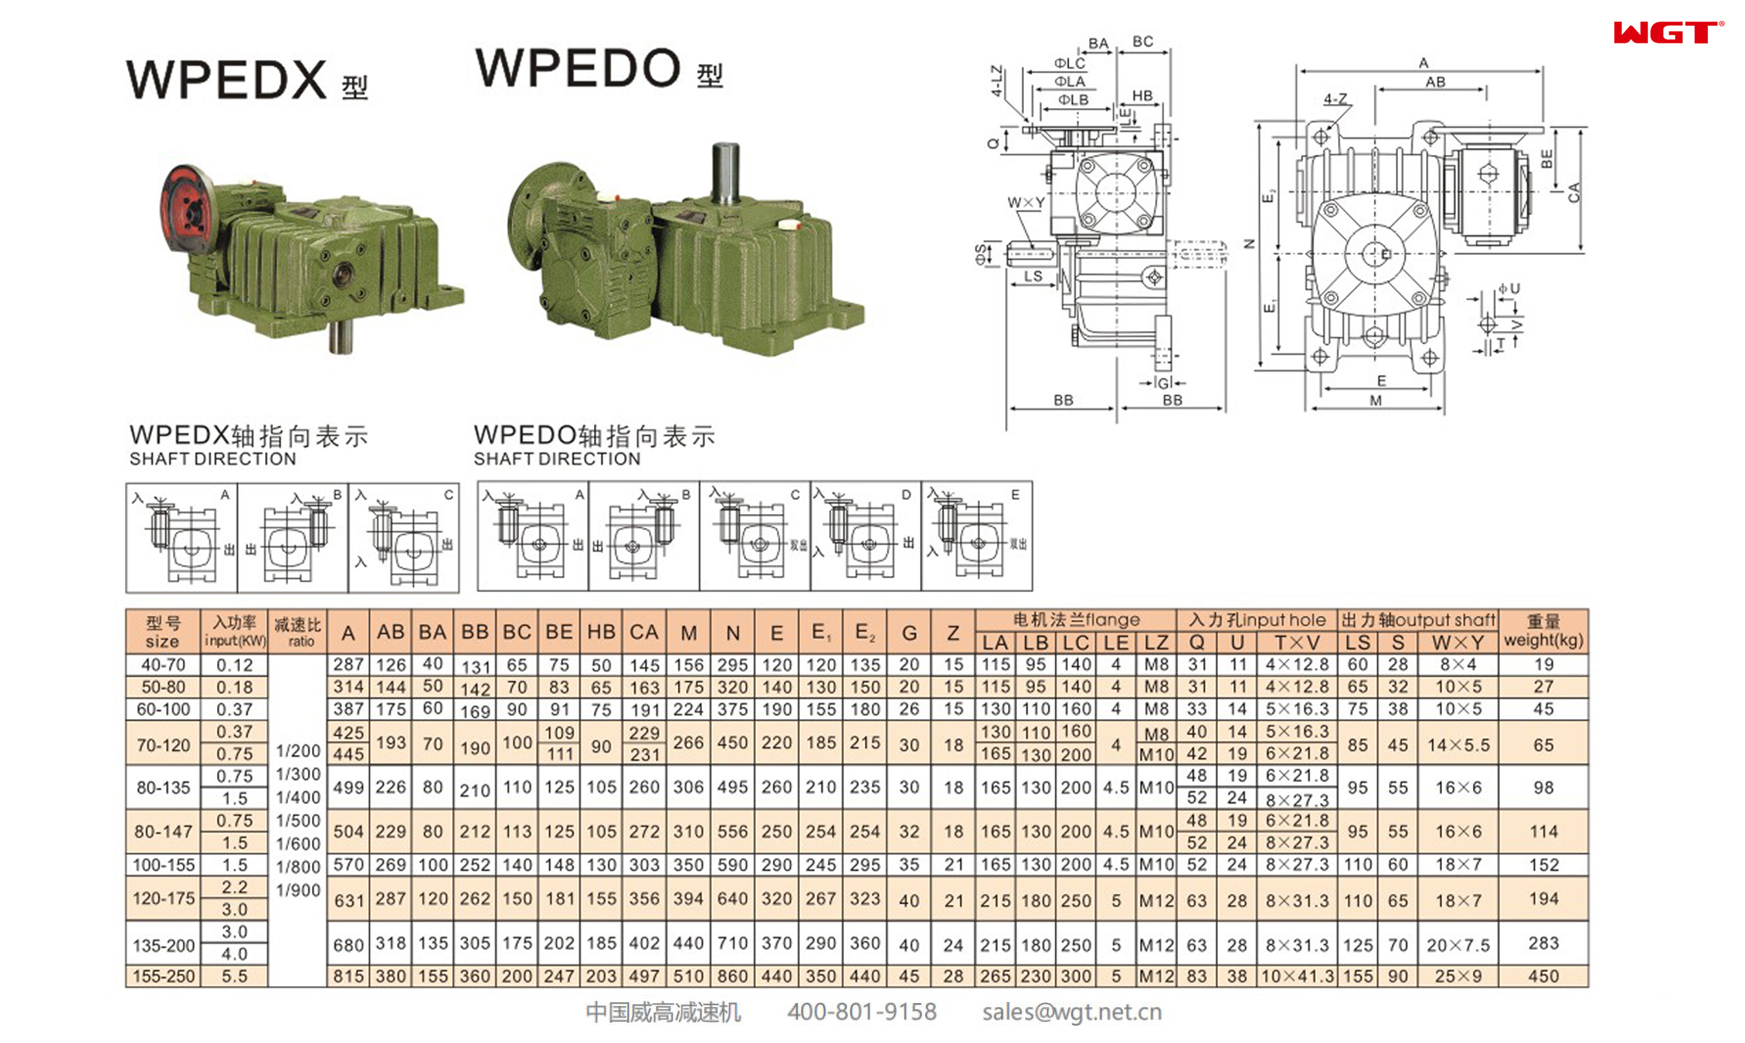 WPEDX WPEDO80-147 蜗轮蜗杆减速机 双倍速减速机